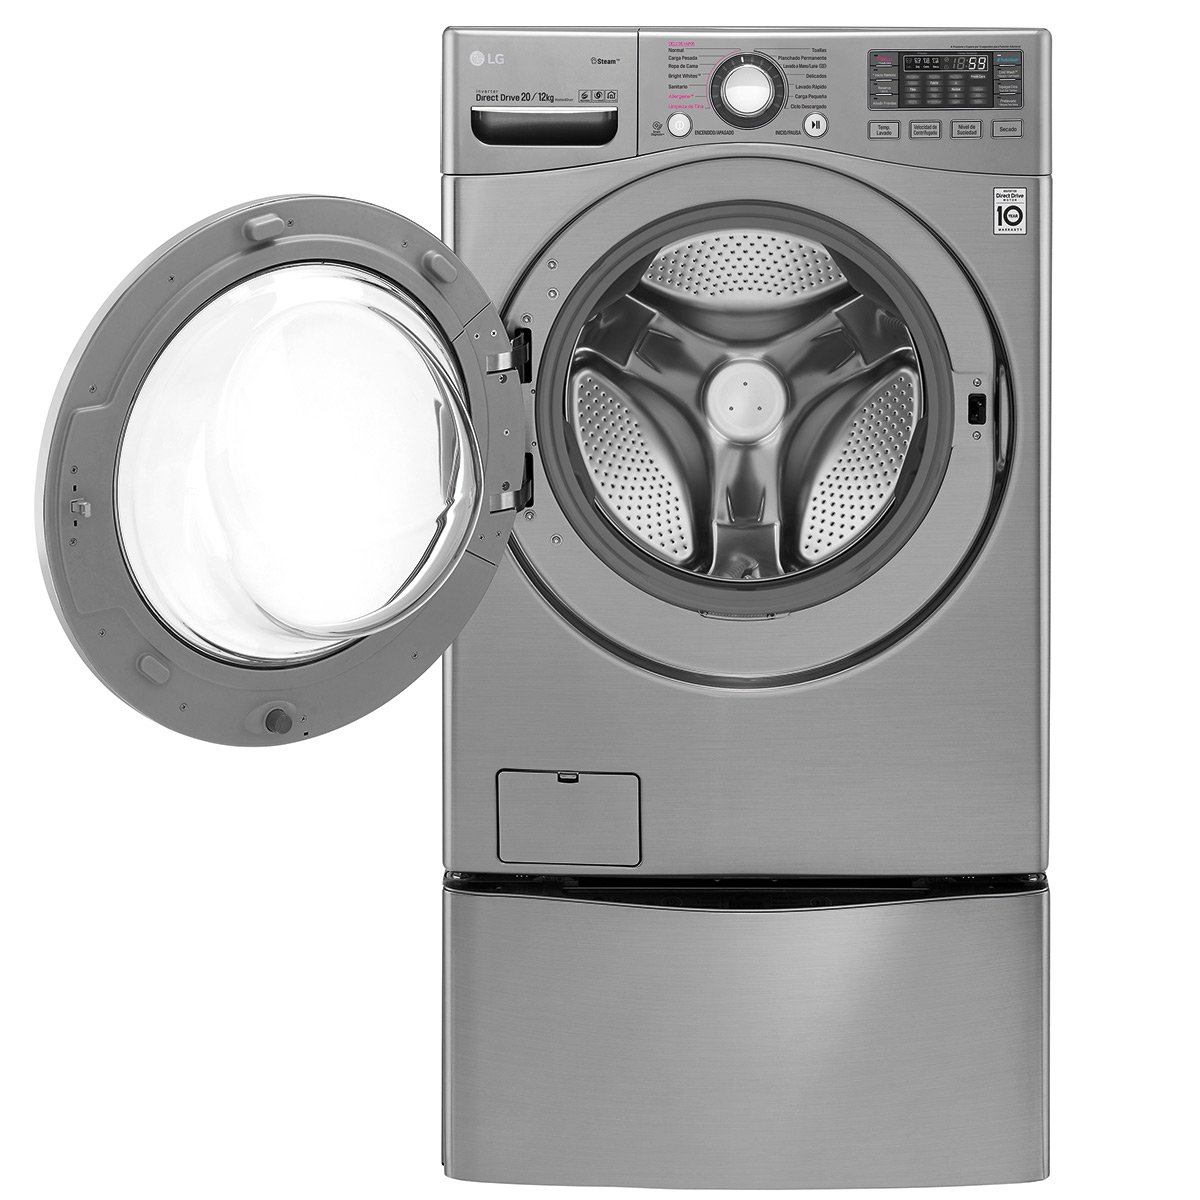 Lavadora y Lavasecadora LG Twin Wash Carga Frontal 3.5 y 18 kg